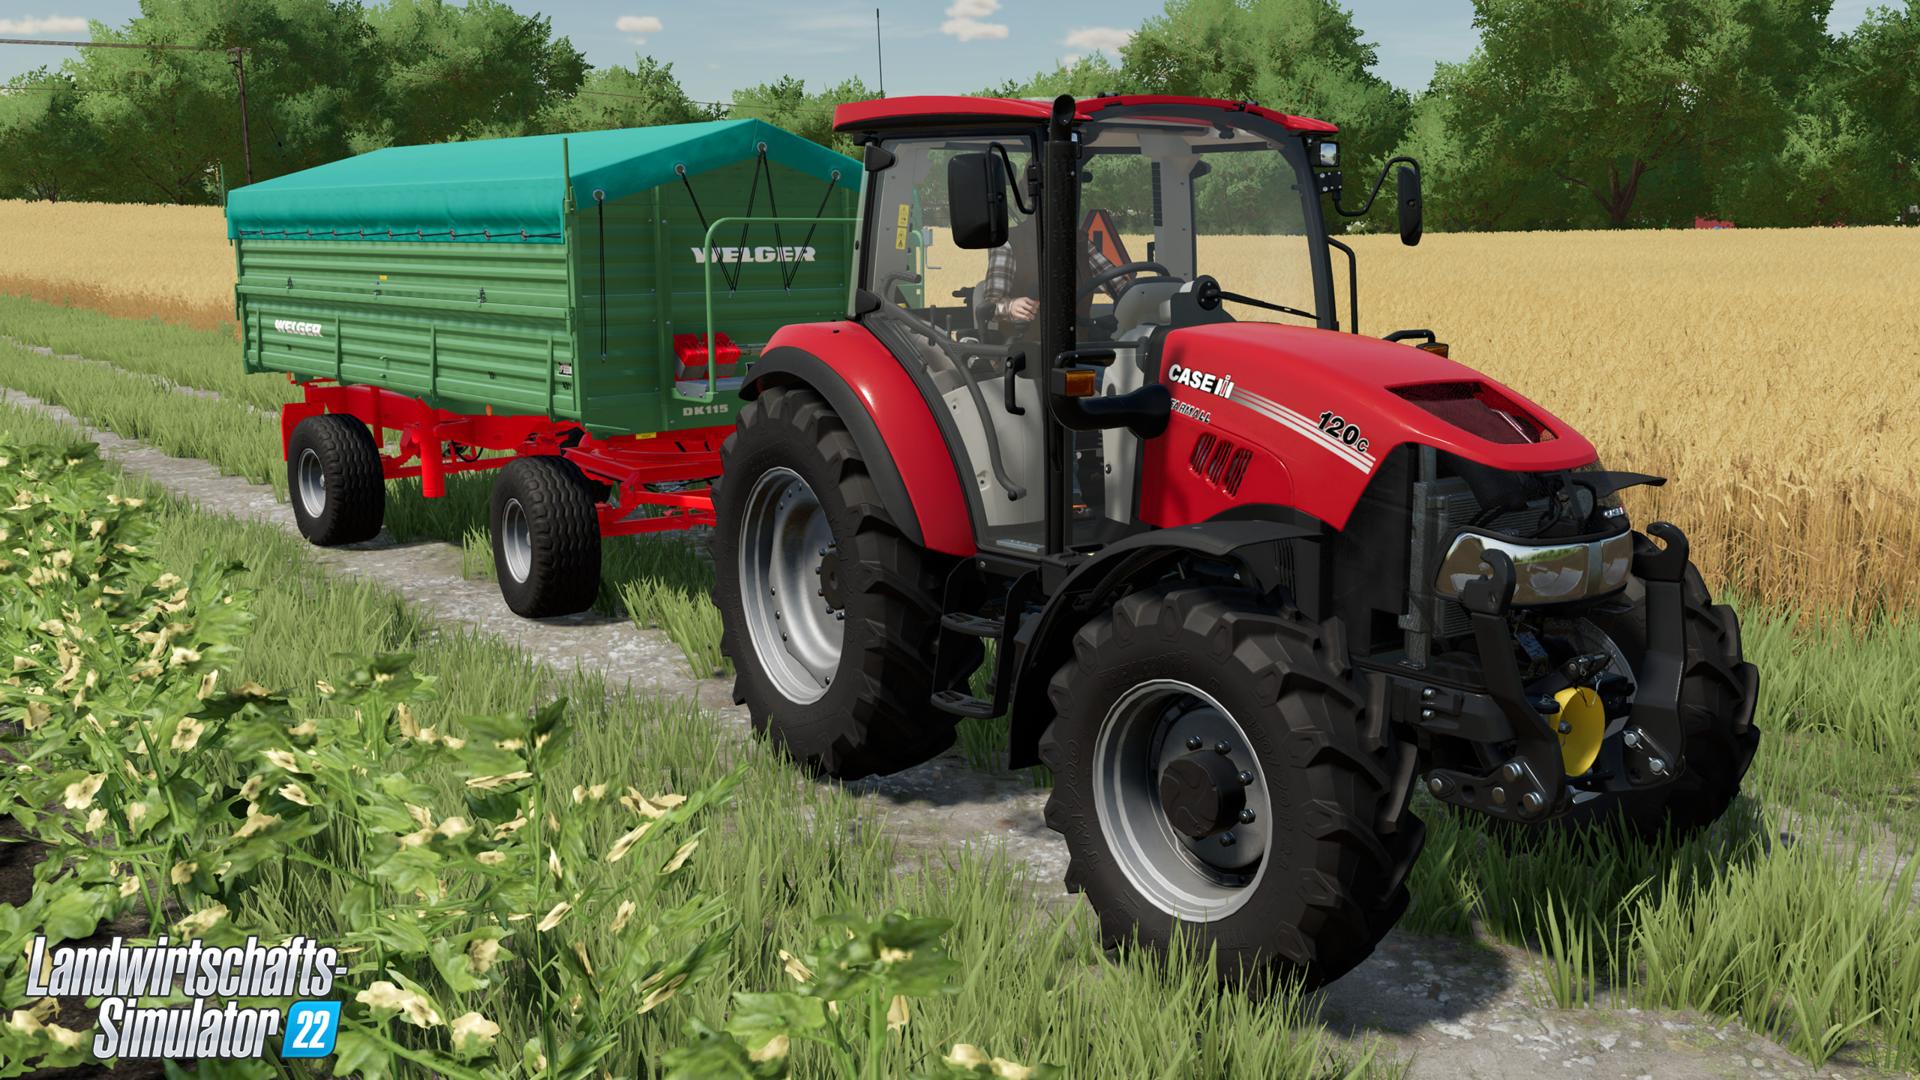 Landwirtschafts-Simulator: Giants Software gibt Neuerungen bekannt